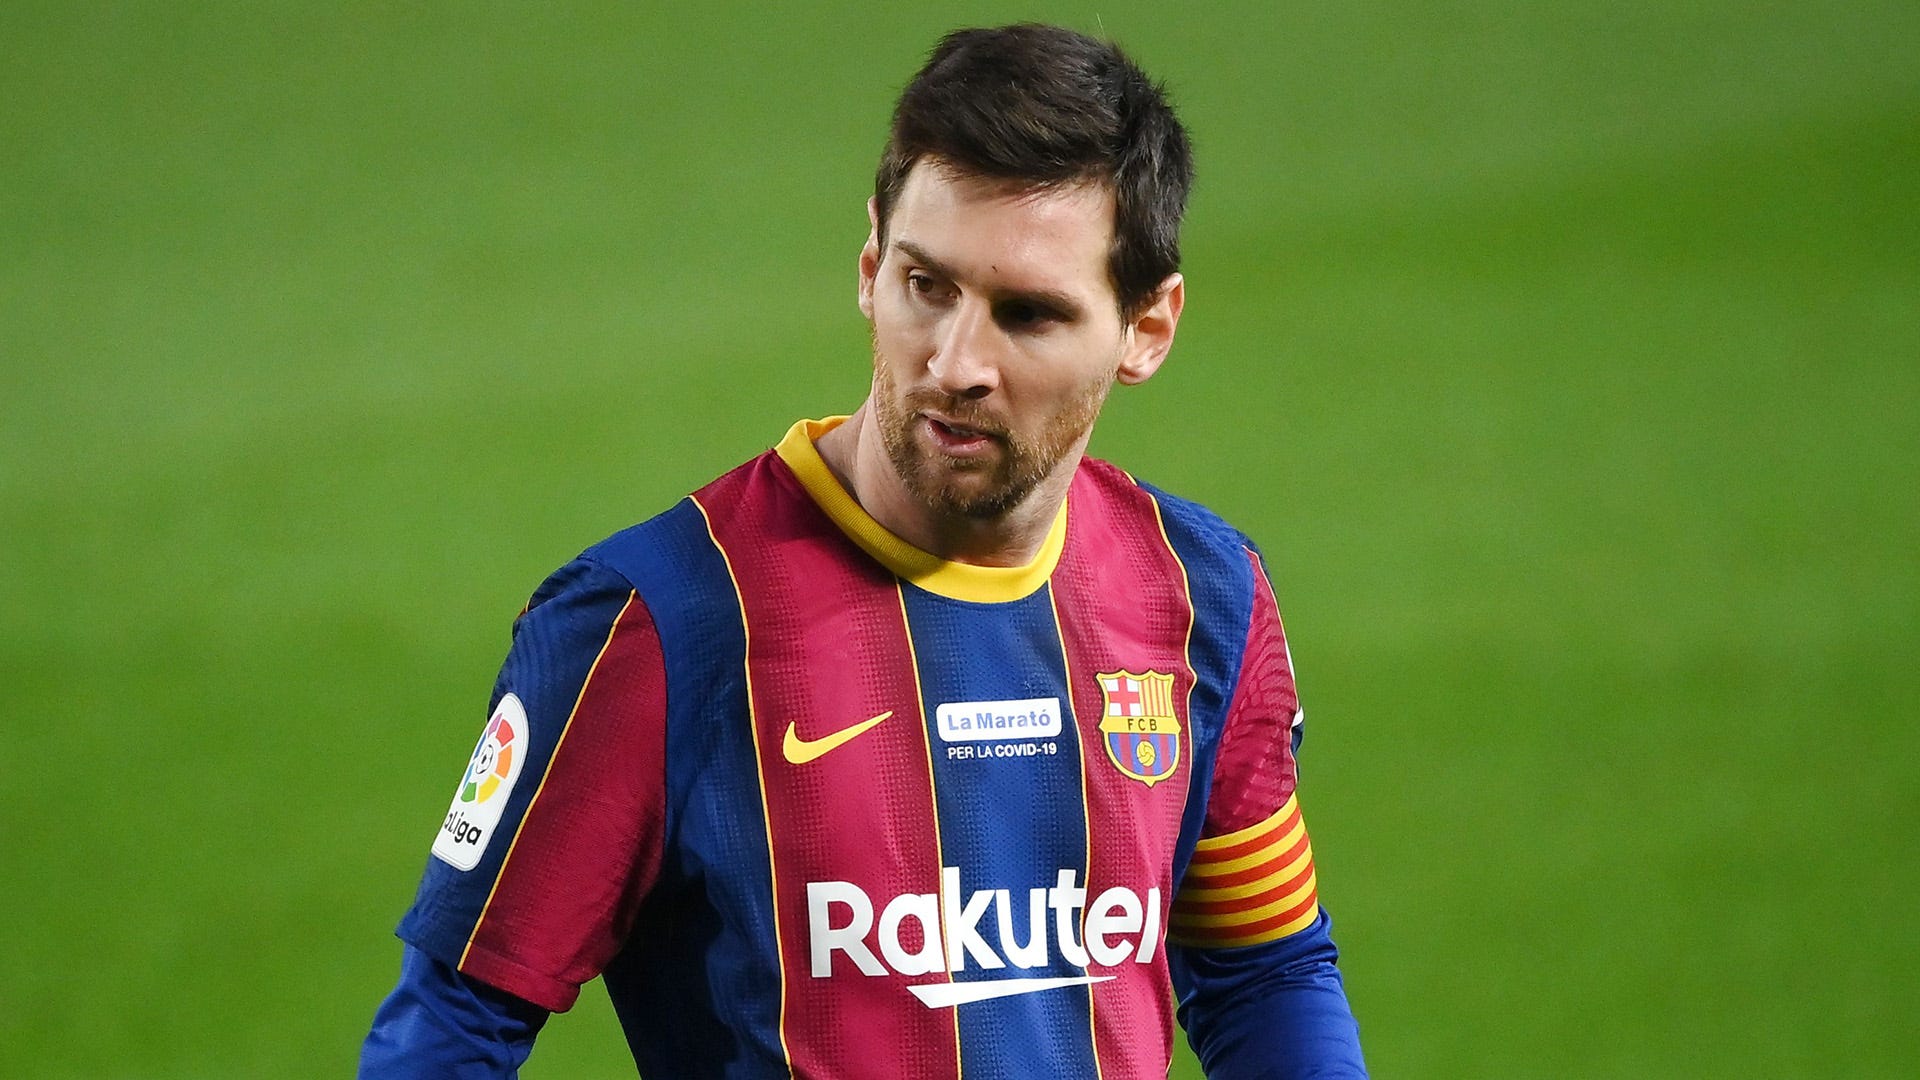 Điều gì đang xảy ra với ngôi sao bóng đá Lionel Messi? Hãy xem ngay các tin tức mới nhất về huyền thoại của Barcelona và nhận thấy lý do tại sao anh ta là người giữ chân người hâm mộ trong trái tim của họ. Bạn sẽ không muốn bỏ lỡ những thông tin này.